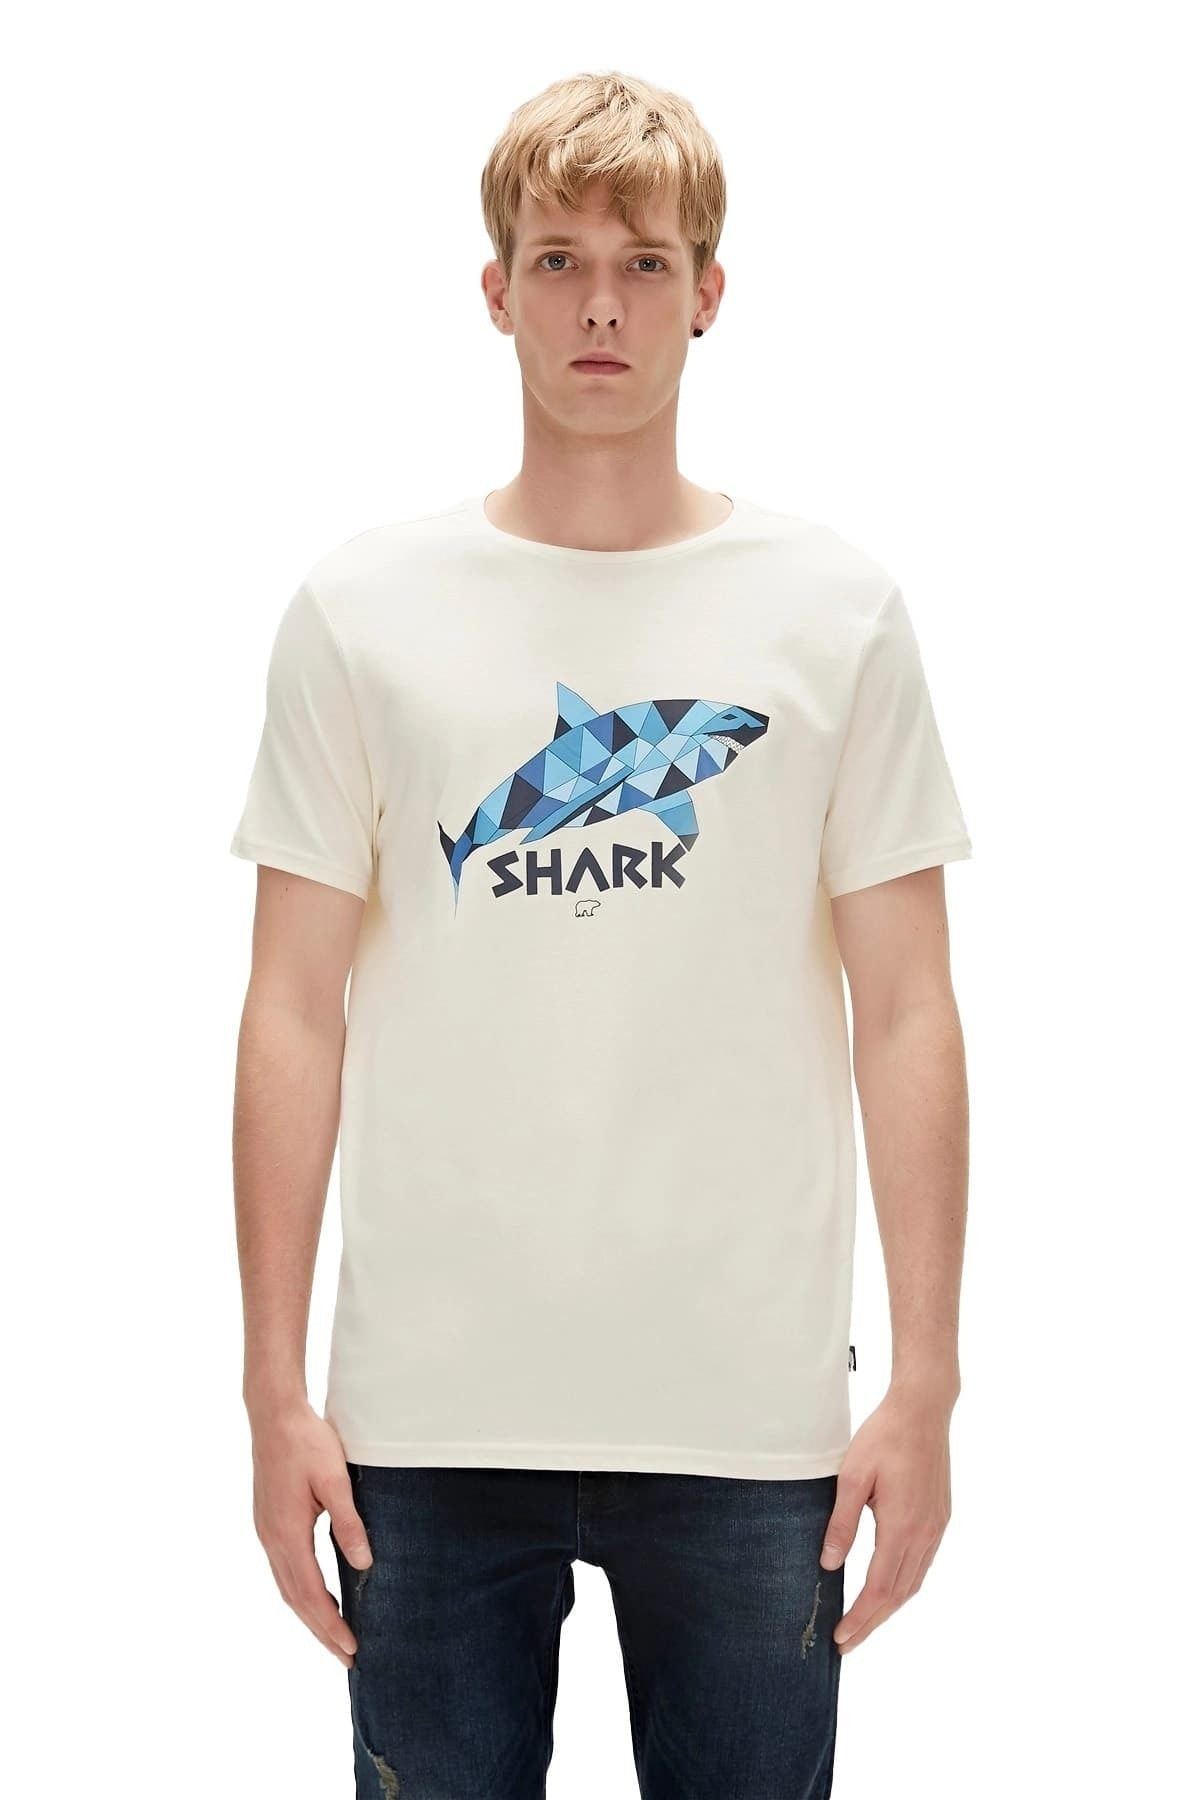 Bad Bear Shark Erkek T-shirt - 23.01.07.024